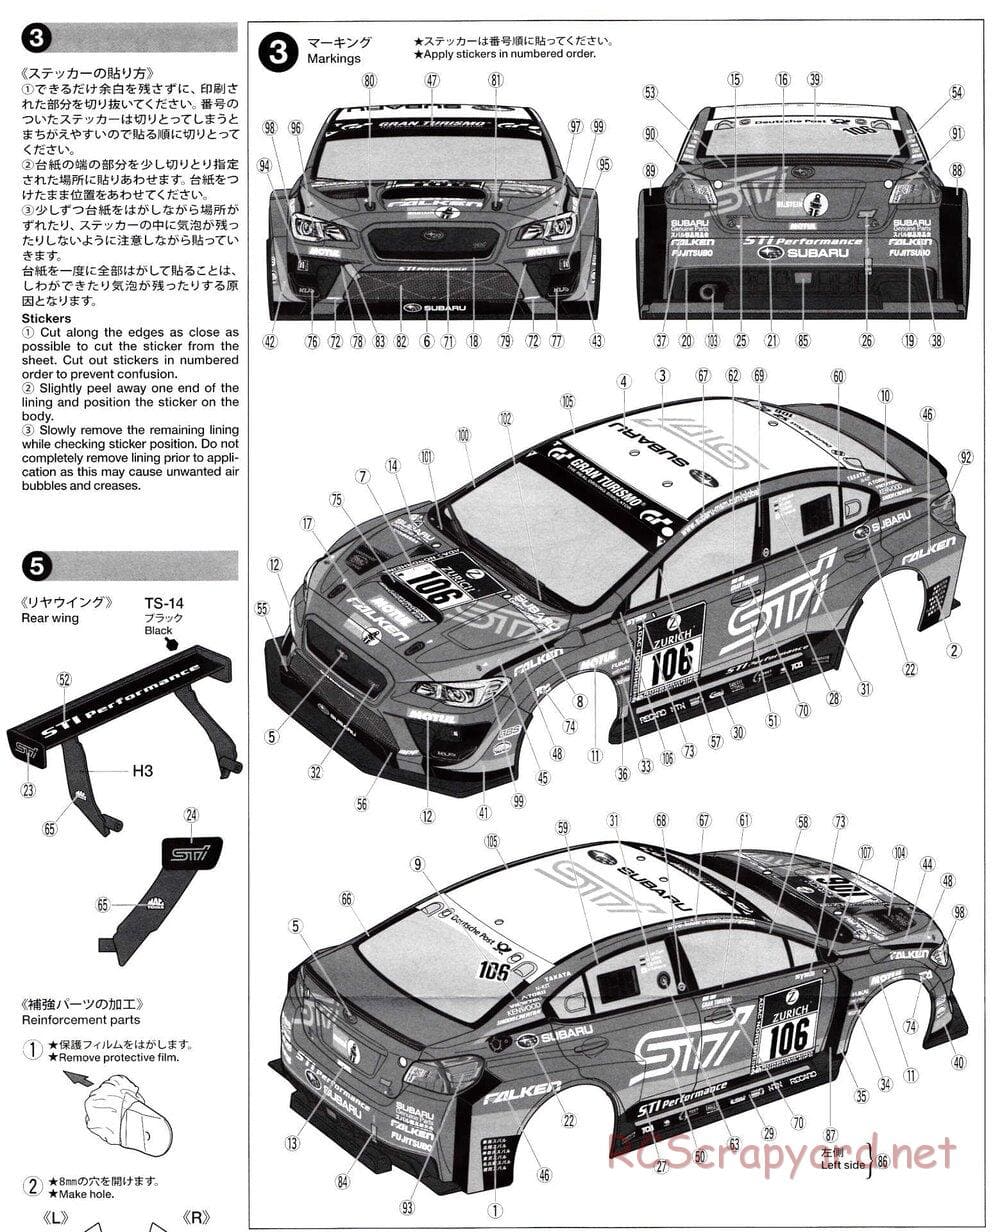 Tamiya - Subaru WRX STI NBR Challenge - TT-02 Chassis - Body Manual - Page 4